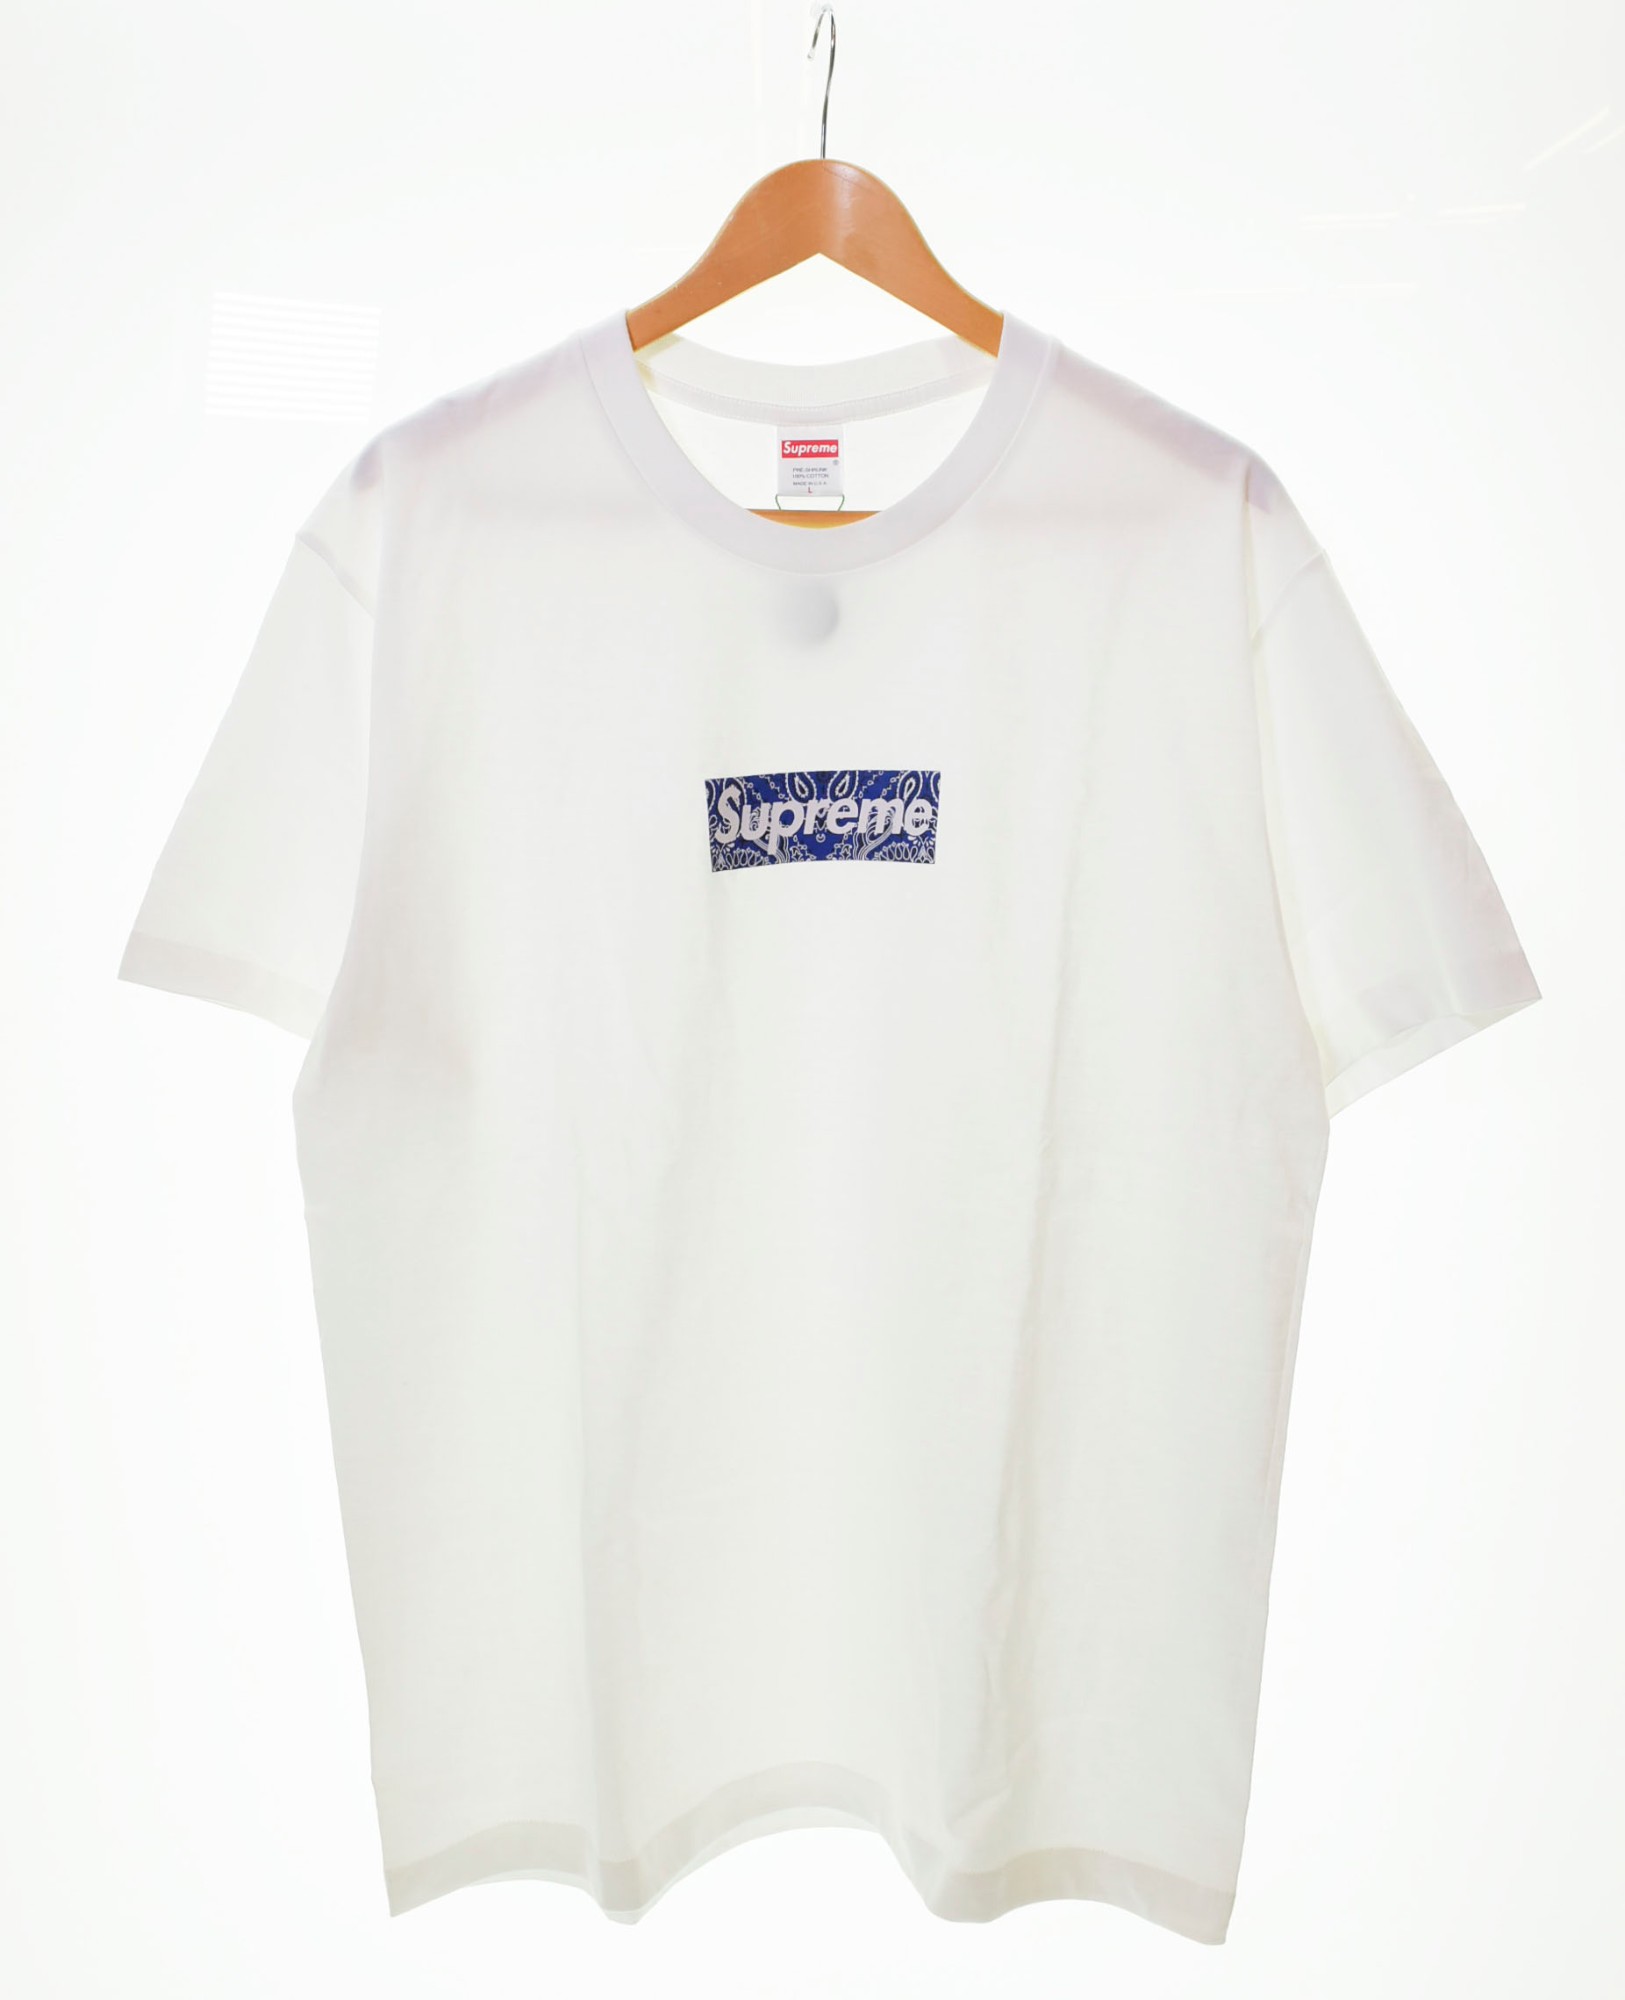 【中古】シュプリーム SUPREME 19FW Bandana Box Logo Tee バンダナ ボックスロゴ 白 Tシャツ ロゴ ホワイト Mサイズ 103MT-132